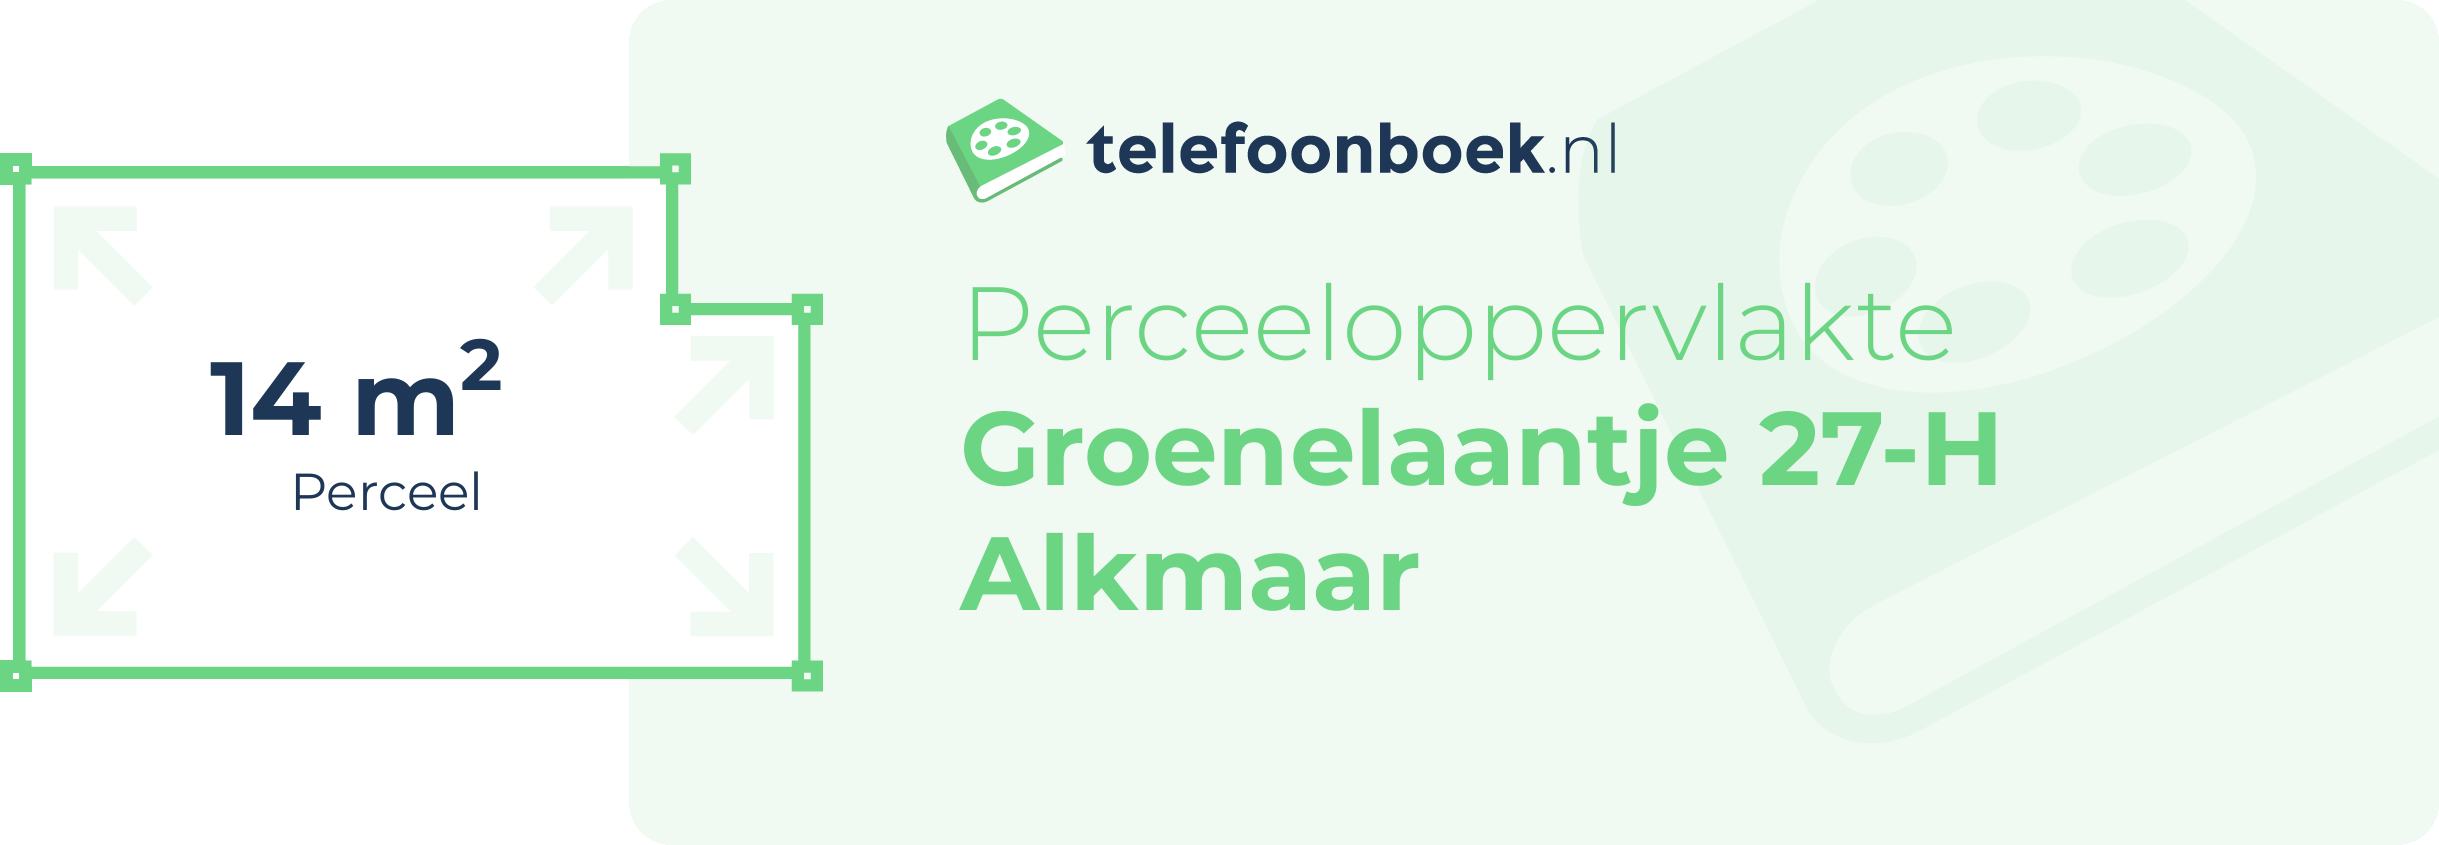 Perceeloppervlakte Groenelaantje 27-H Alkmaar